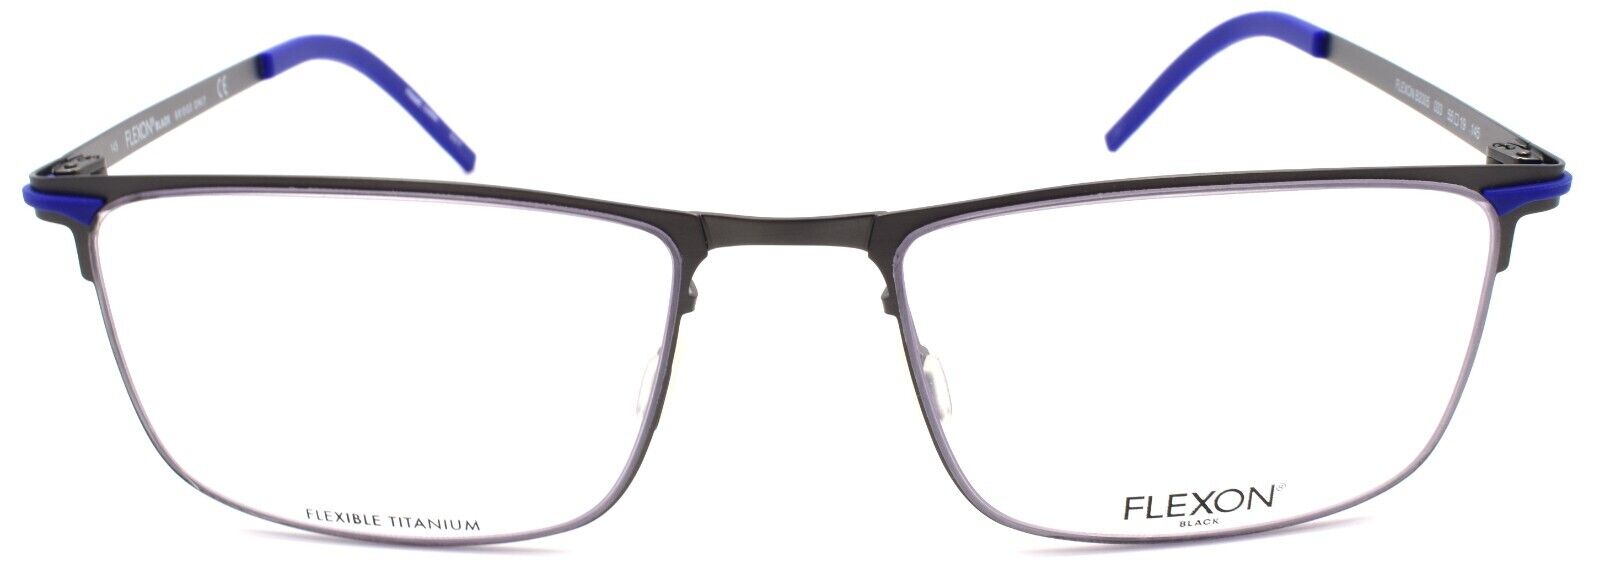 2-Flexon B2005 033 Men's Eyeglasses Frames Gunmetal 55-19-145 Flexible Titanium-883900204538-IKSpecs